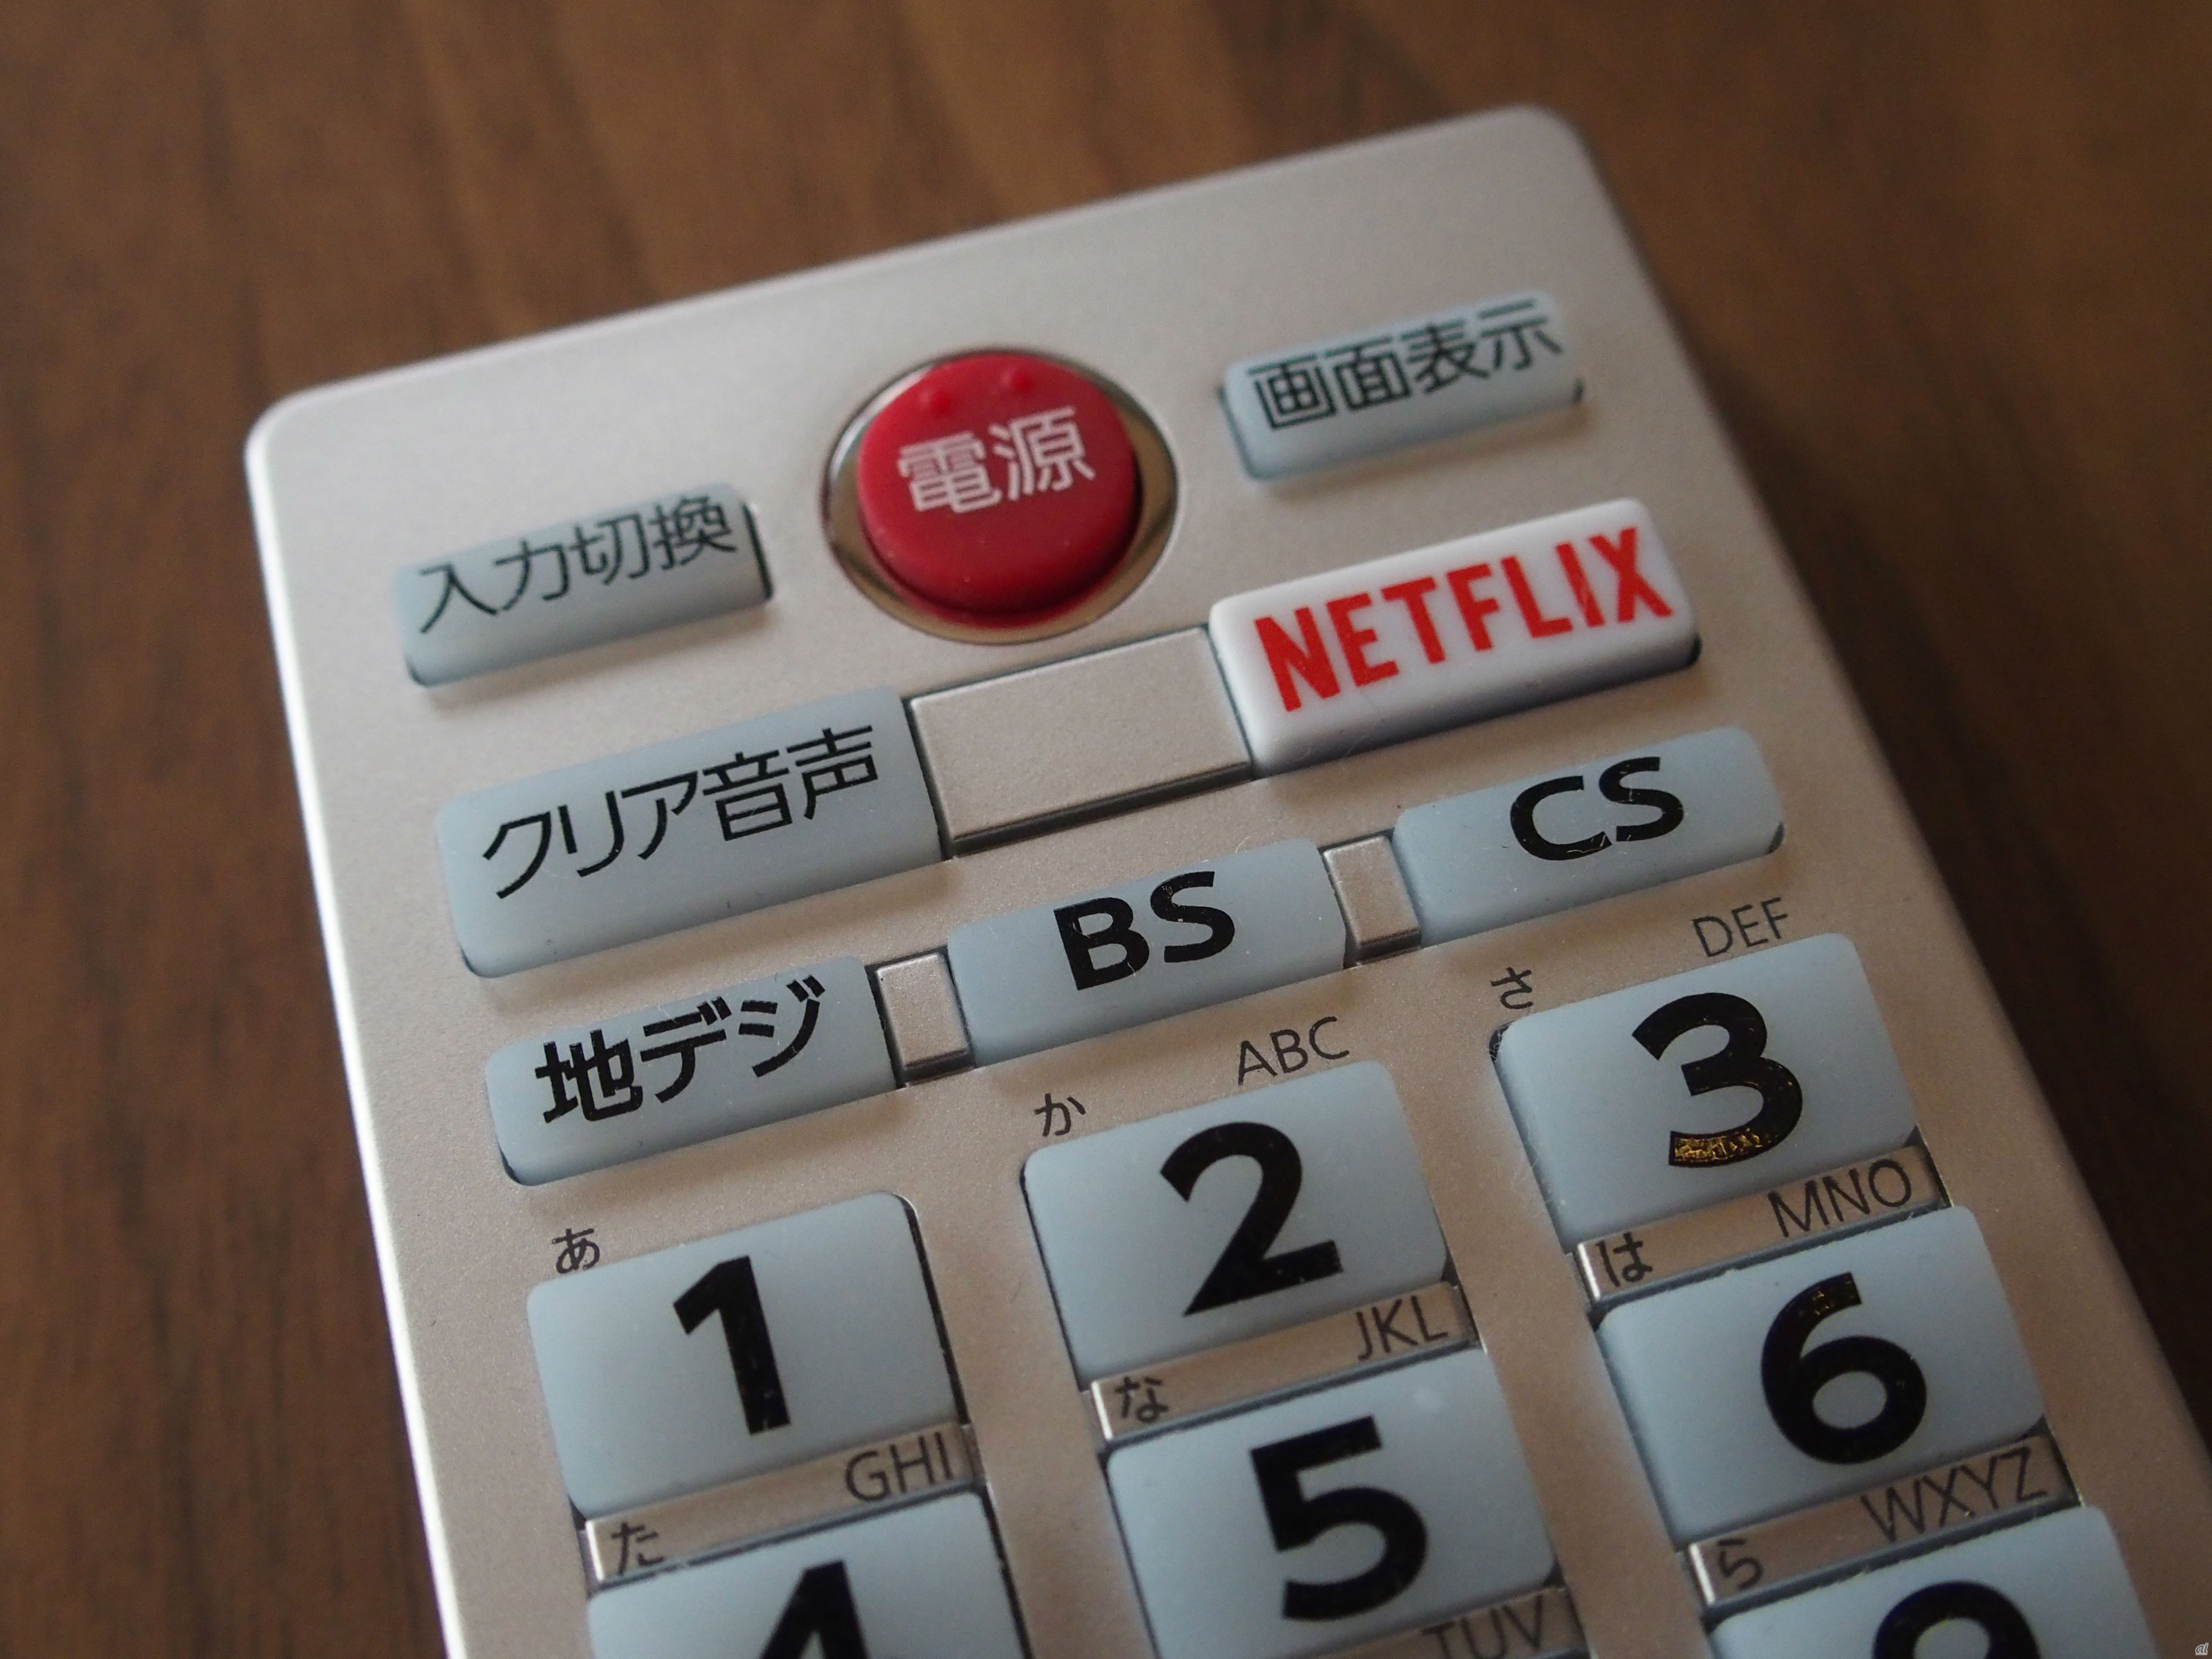 「REGZA V30」シリーズのリモコン。動画配信サービス「Netflix」のボタンが搭載されている